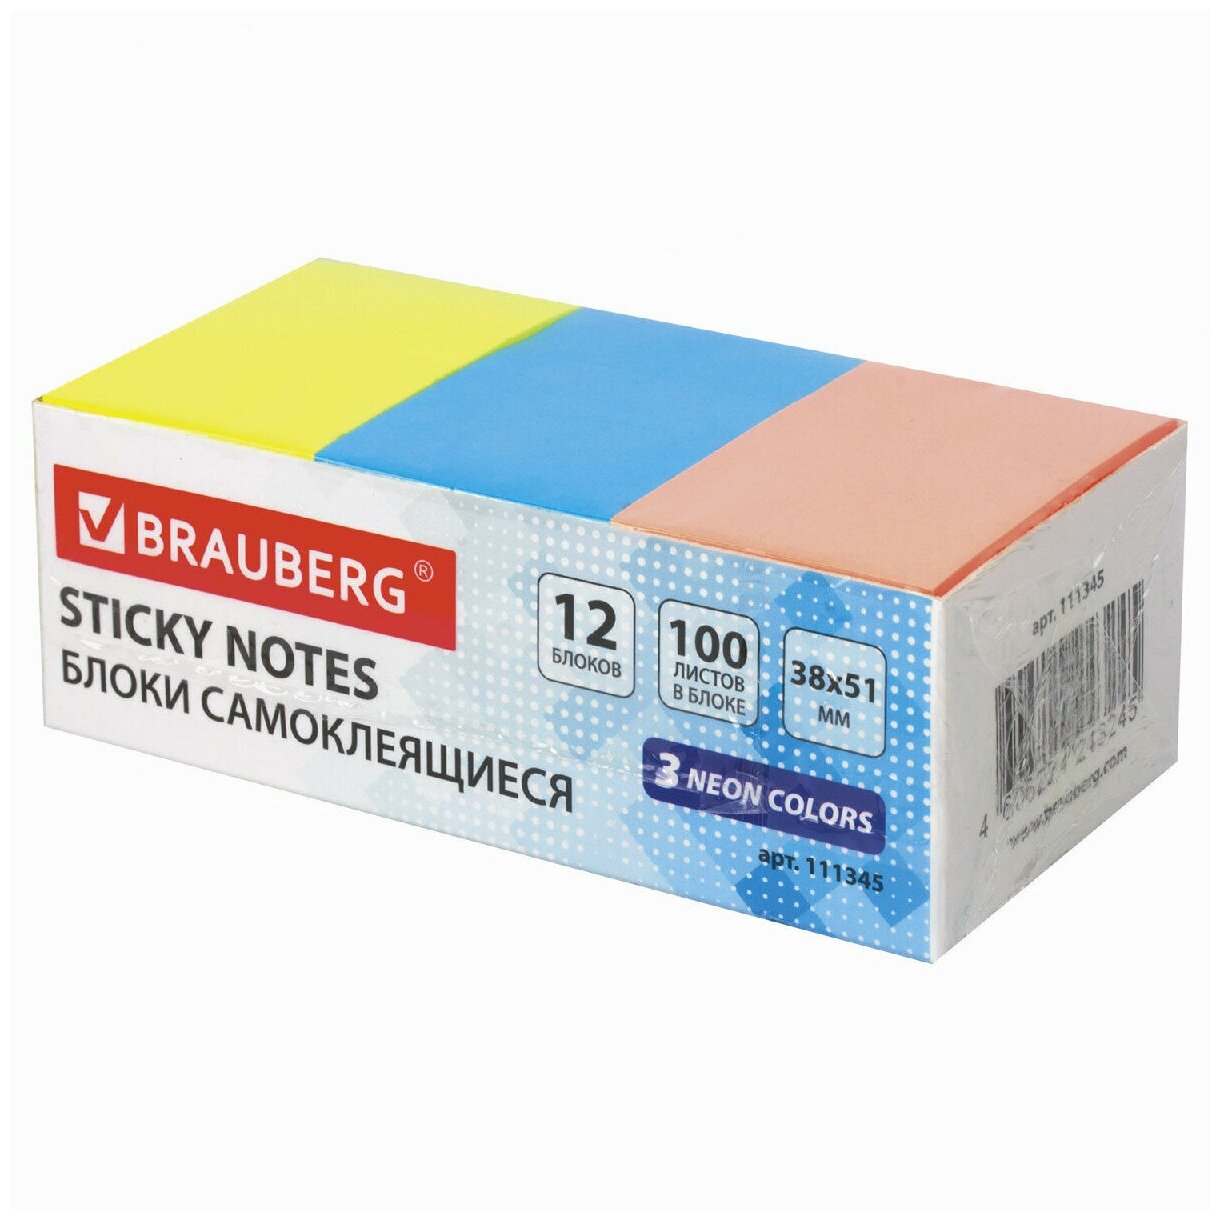 Блоки самоклеящиеся (стикеры) BRAUBERG 38х51 мм, 100 листов, набор 12 штук, 3 неоновых цвета, 111345